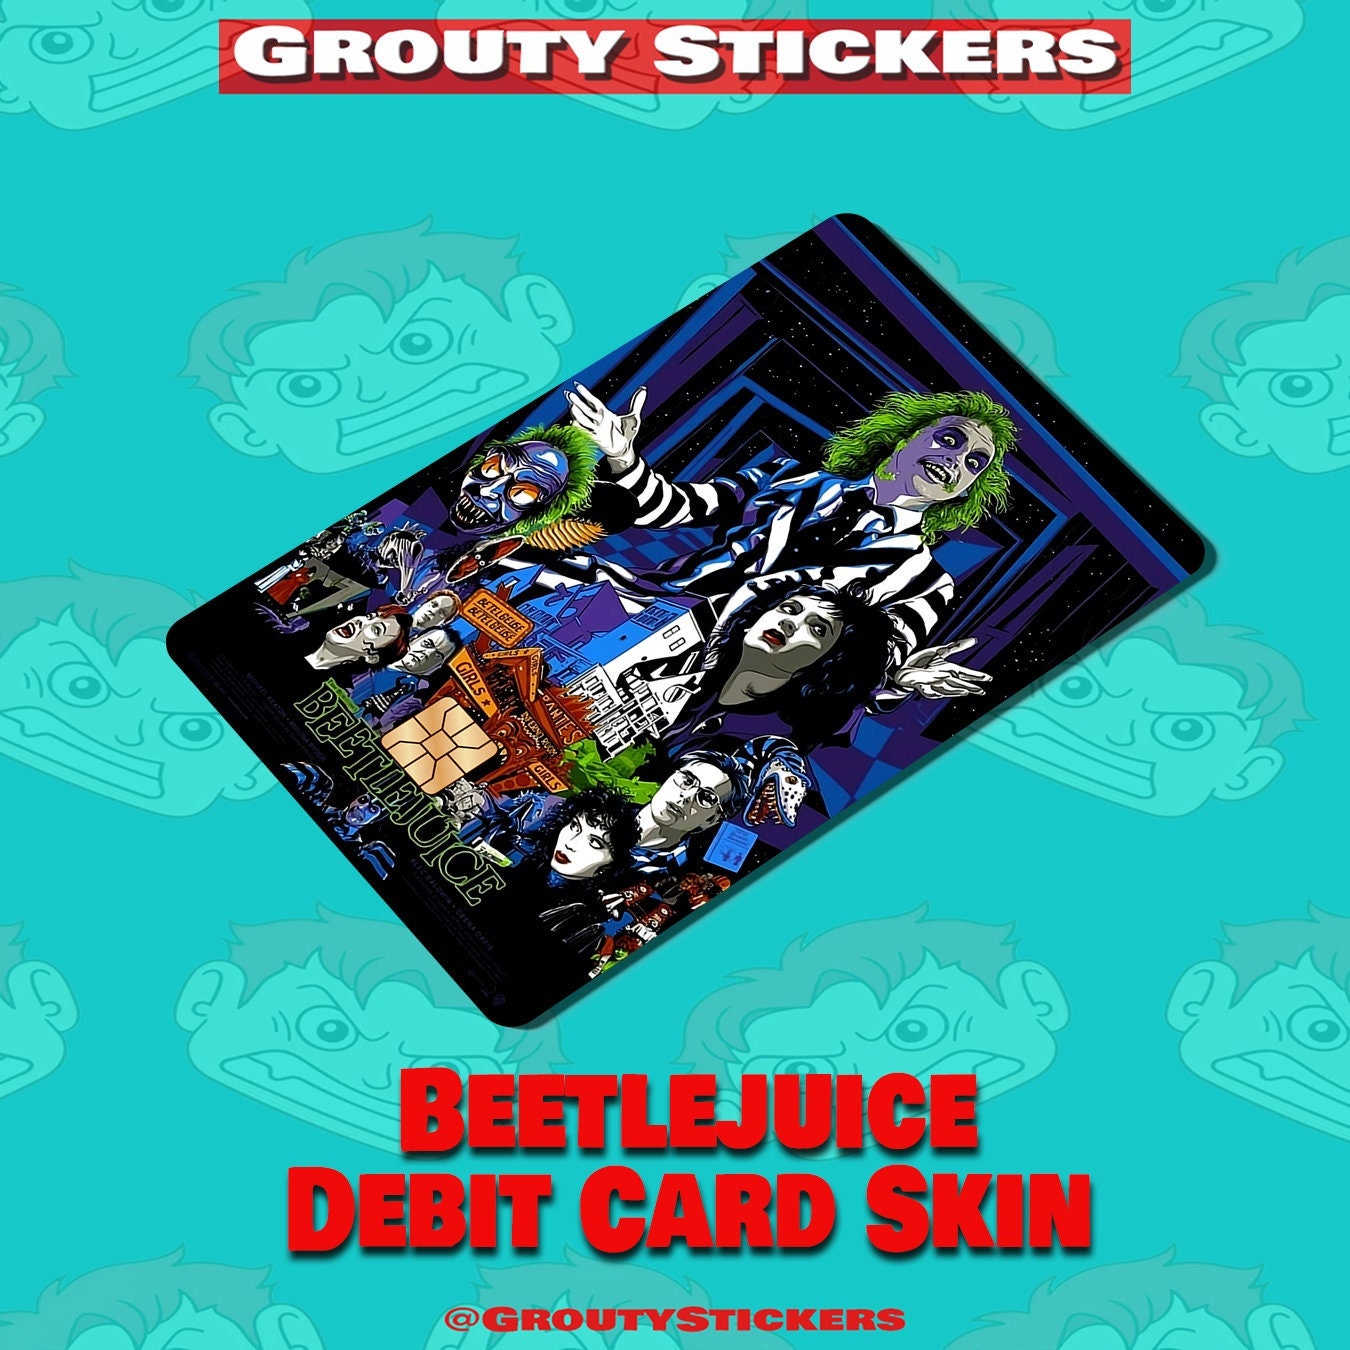 Custom Credit Card Debit Card Skin Cover Sticker Decal Meme Funny Creative  4 YOU